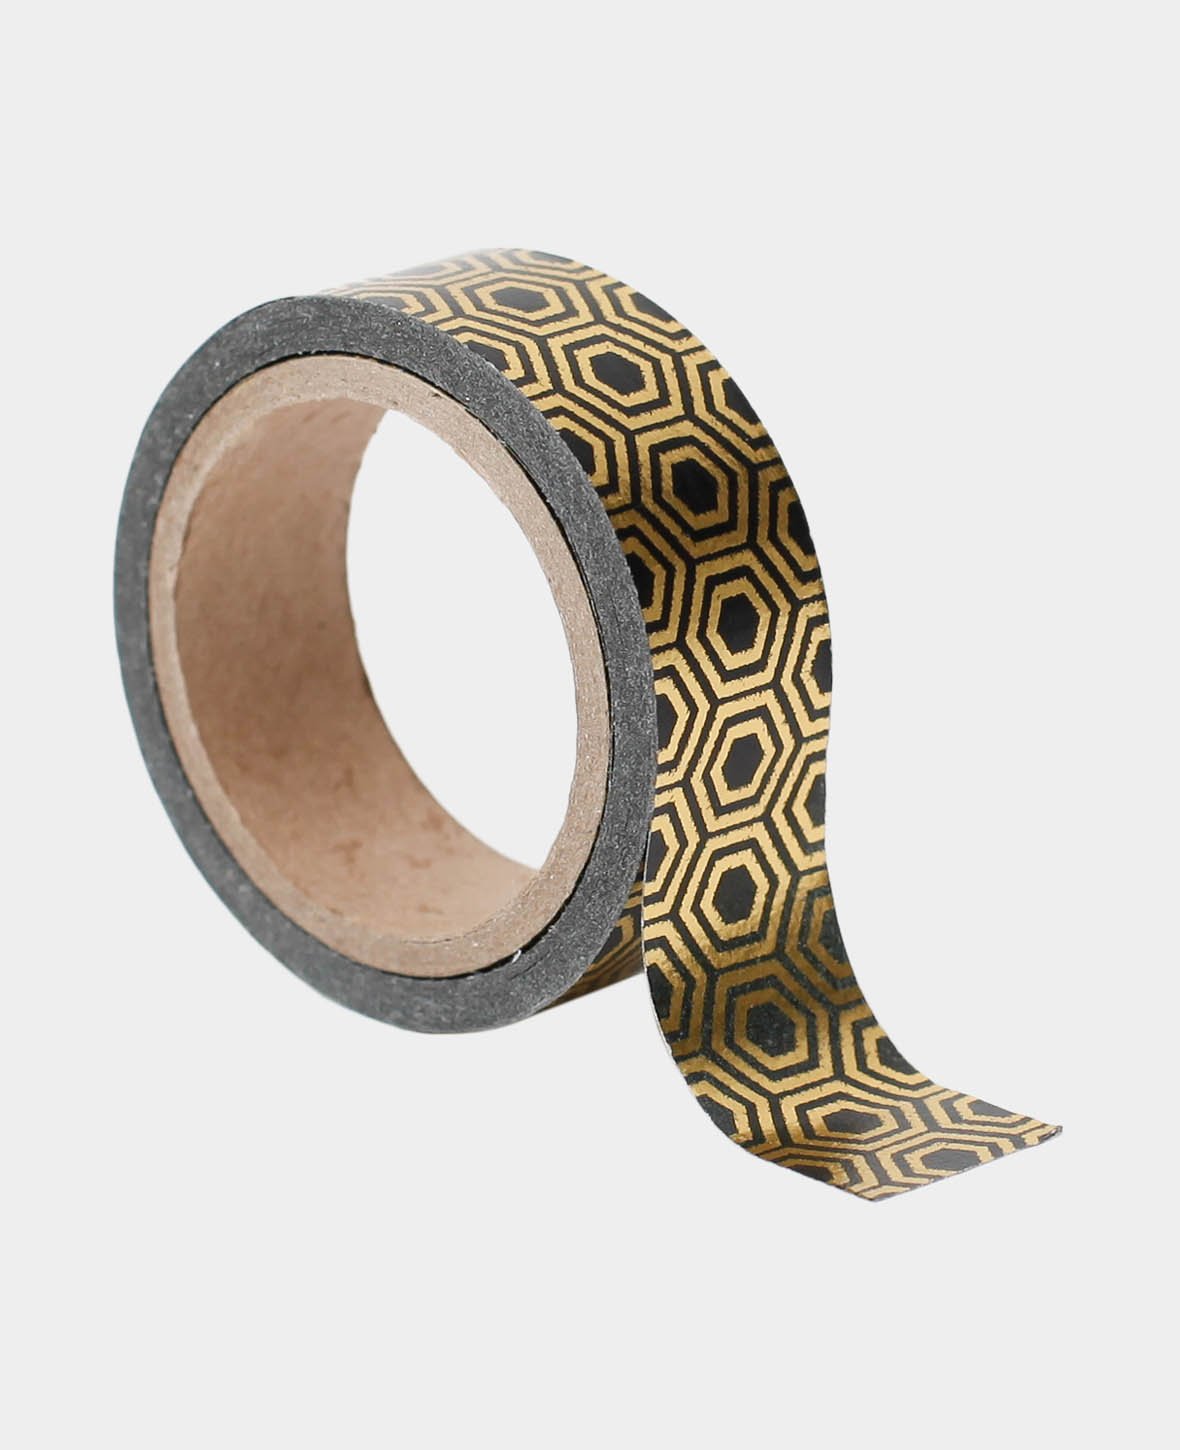 Washi Tape 15 mm x 5 m, Metallic Gold, Masking Tape Klebeband zum Verzieren  und Dekorieren - I AM CREATIVE